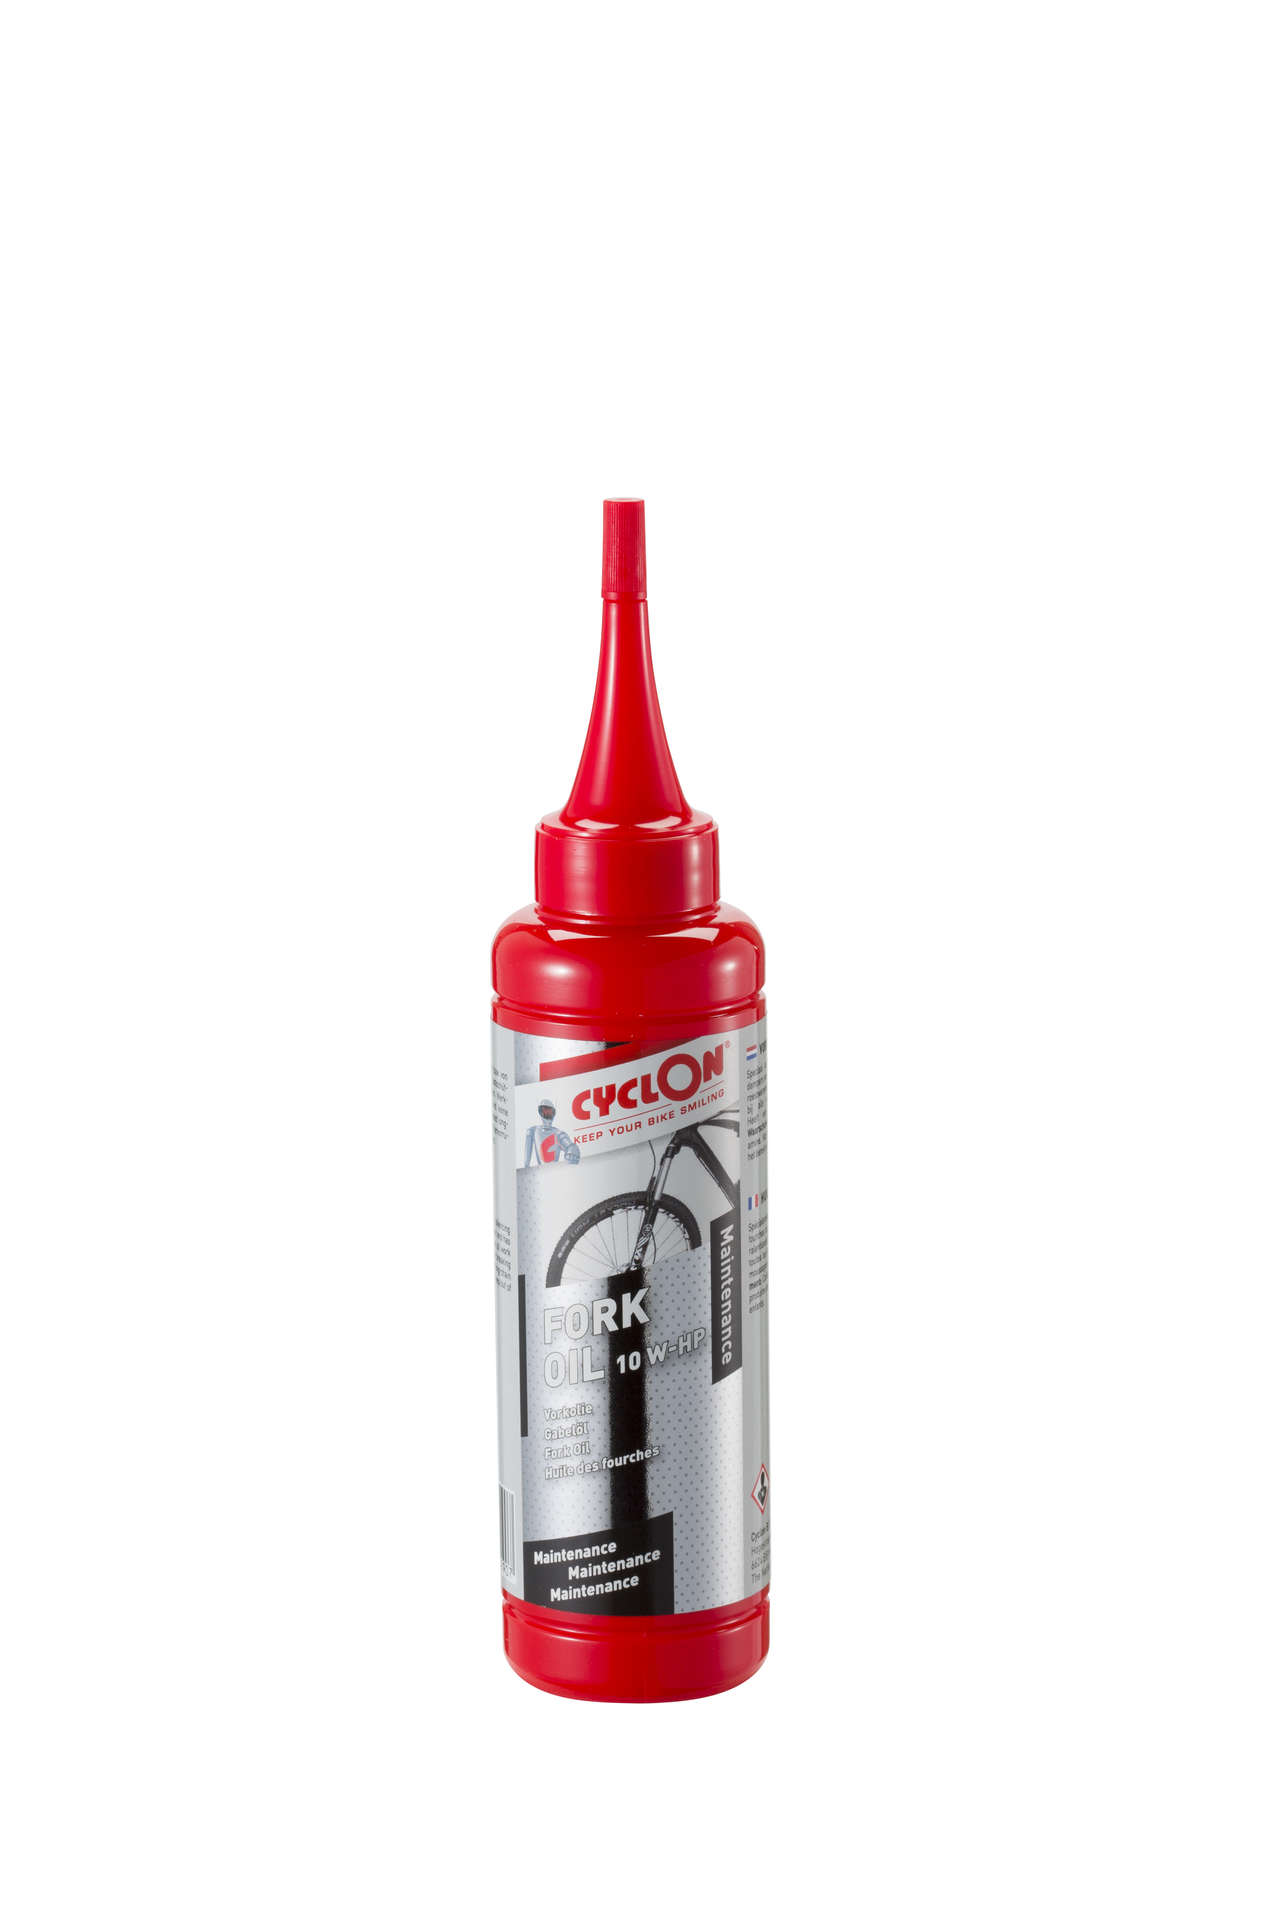 Cyclon Fork Oil 10 W-HP 125 ml